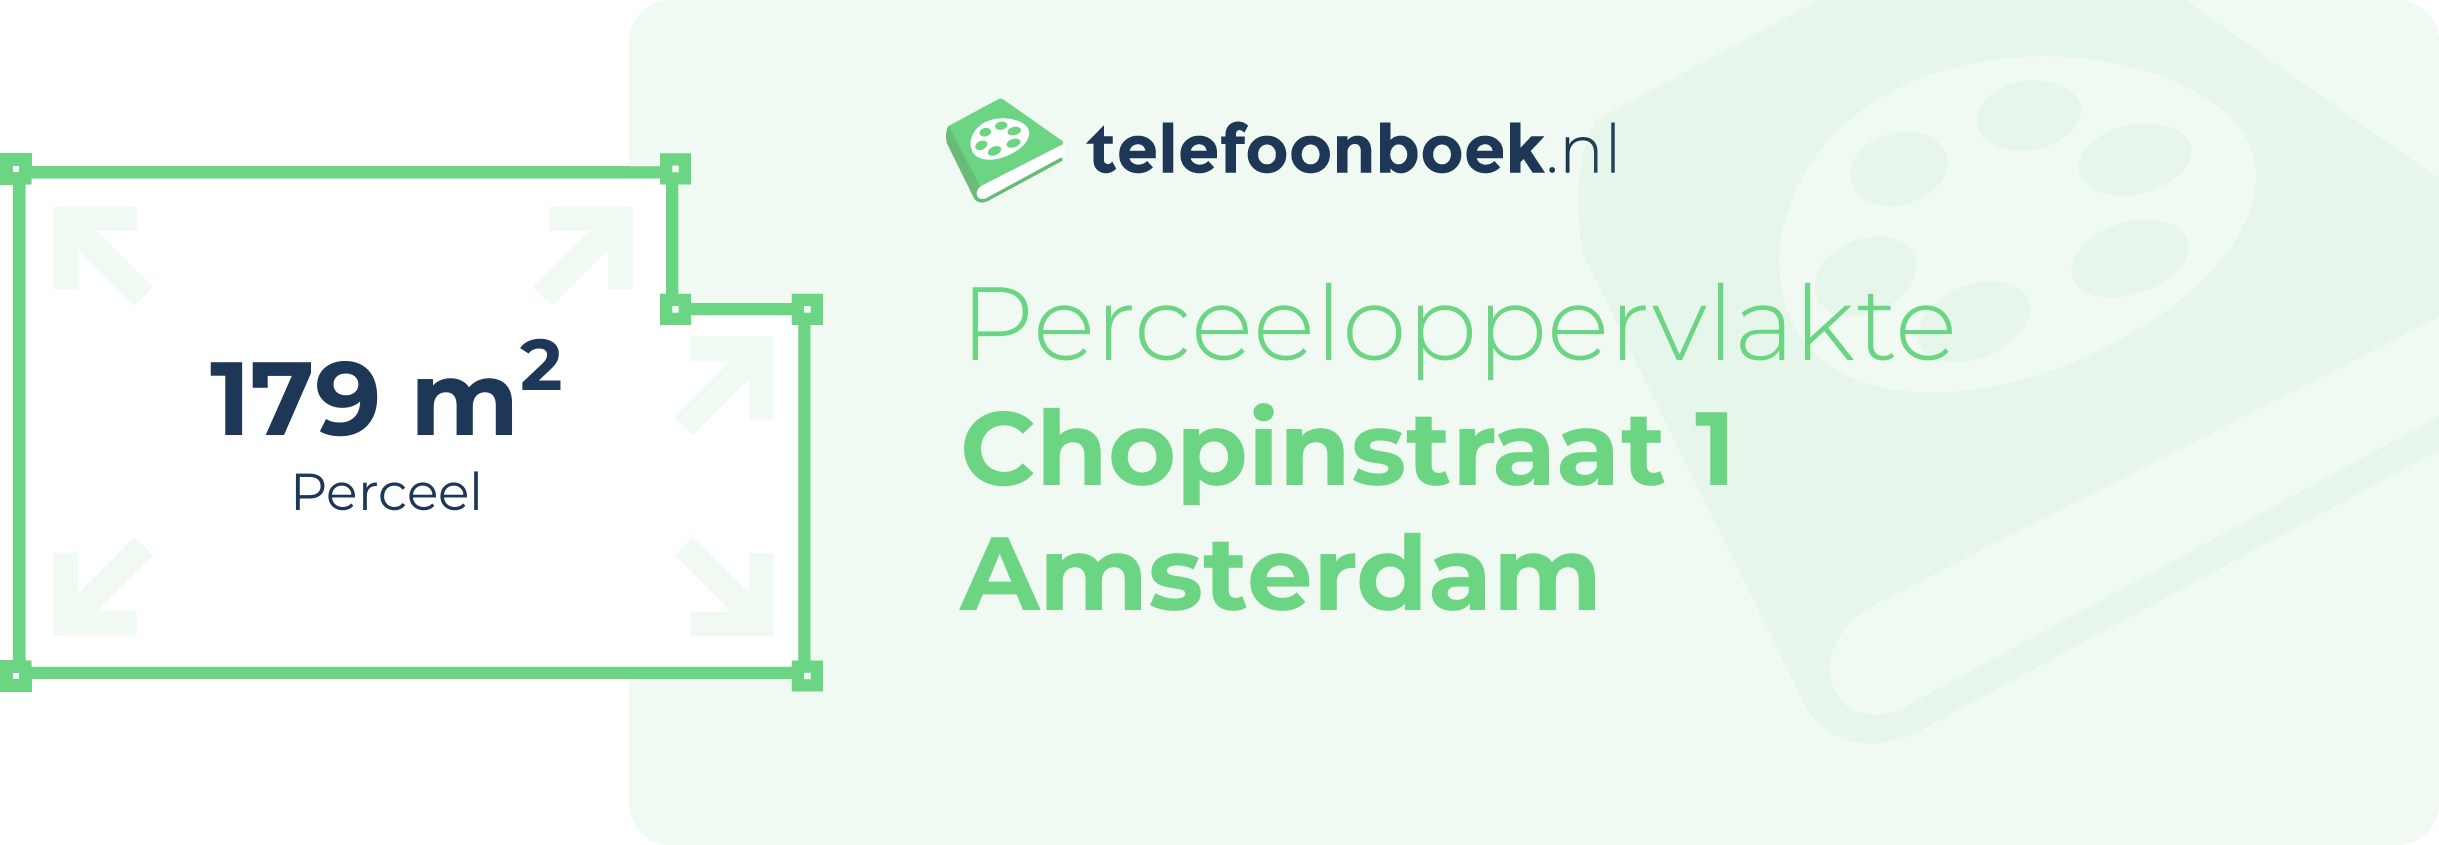 Perceeloppervlakte Chopinstraat 1 Amsterdam